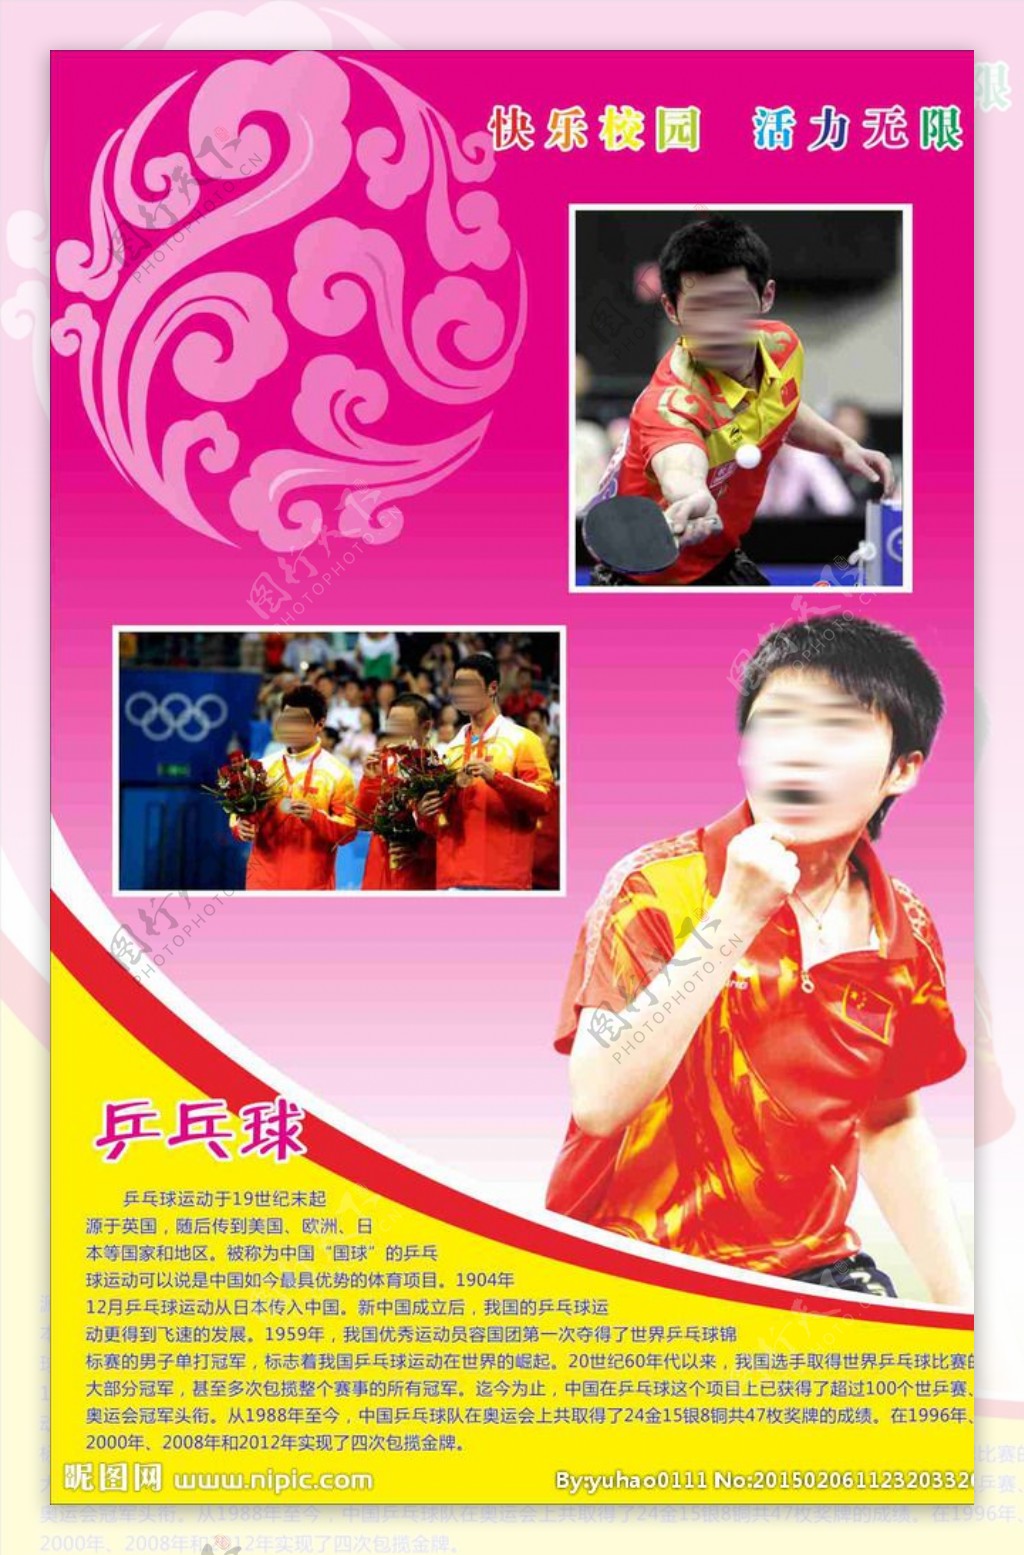 中国国球乒乓球图片